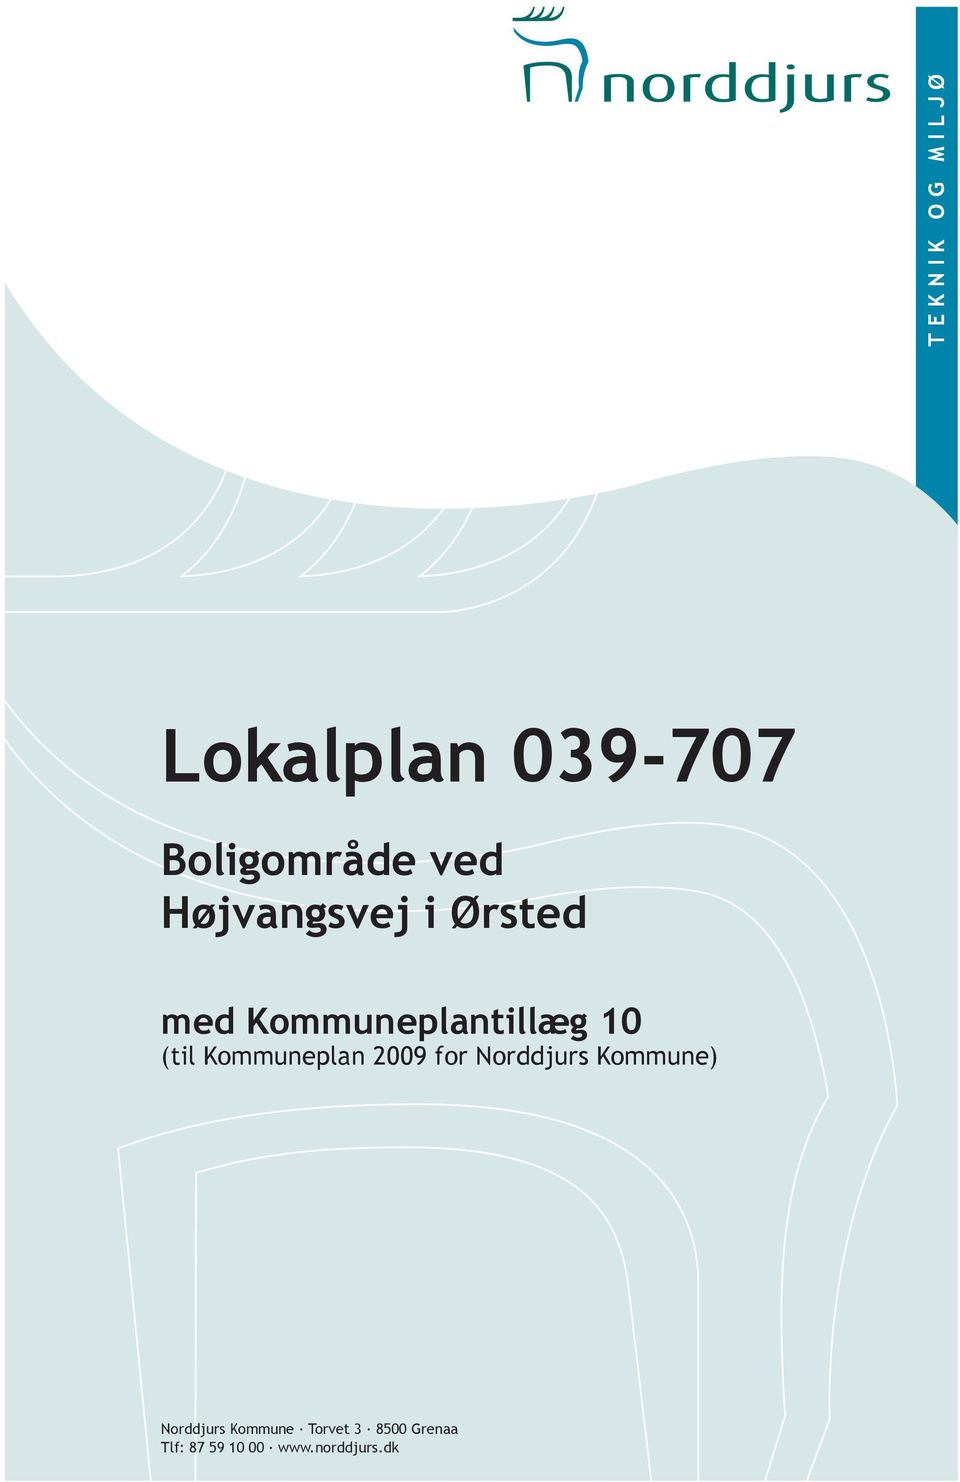 Kommuneplan 2009 for Norddjurs Kommune) Norddjurs